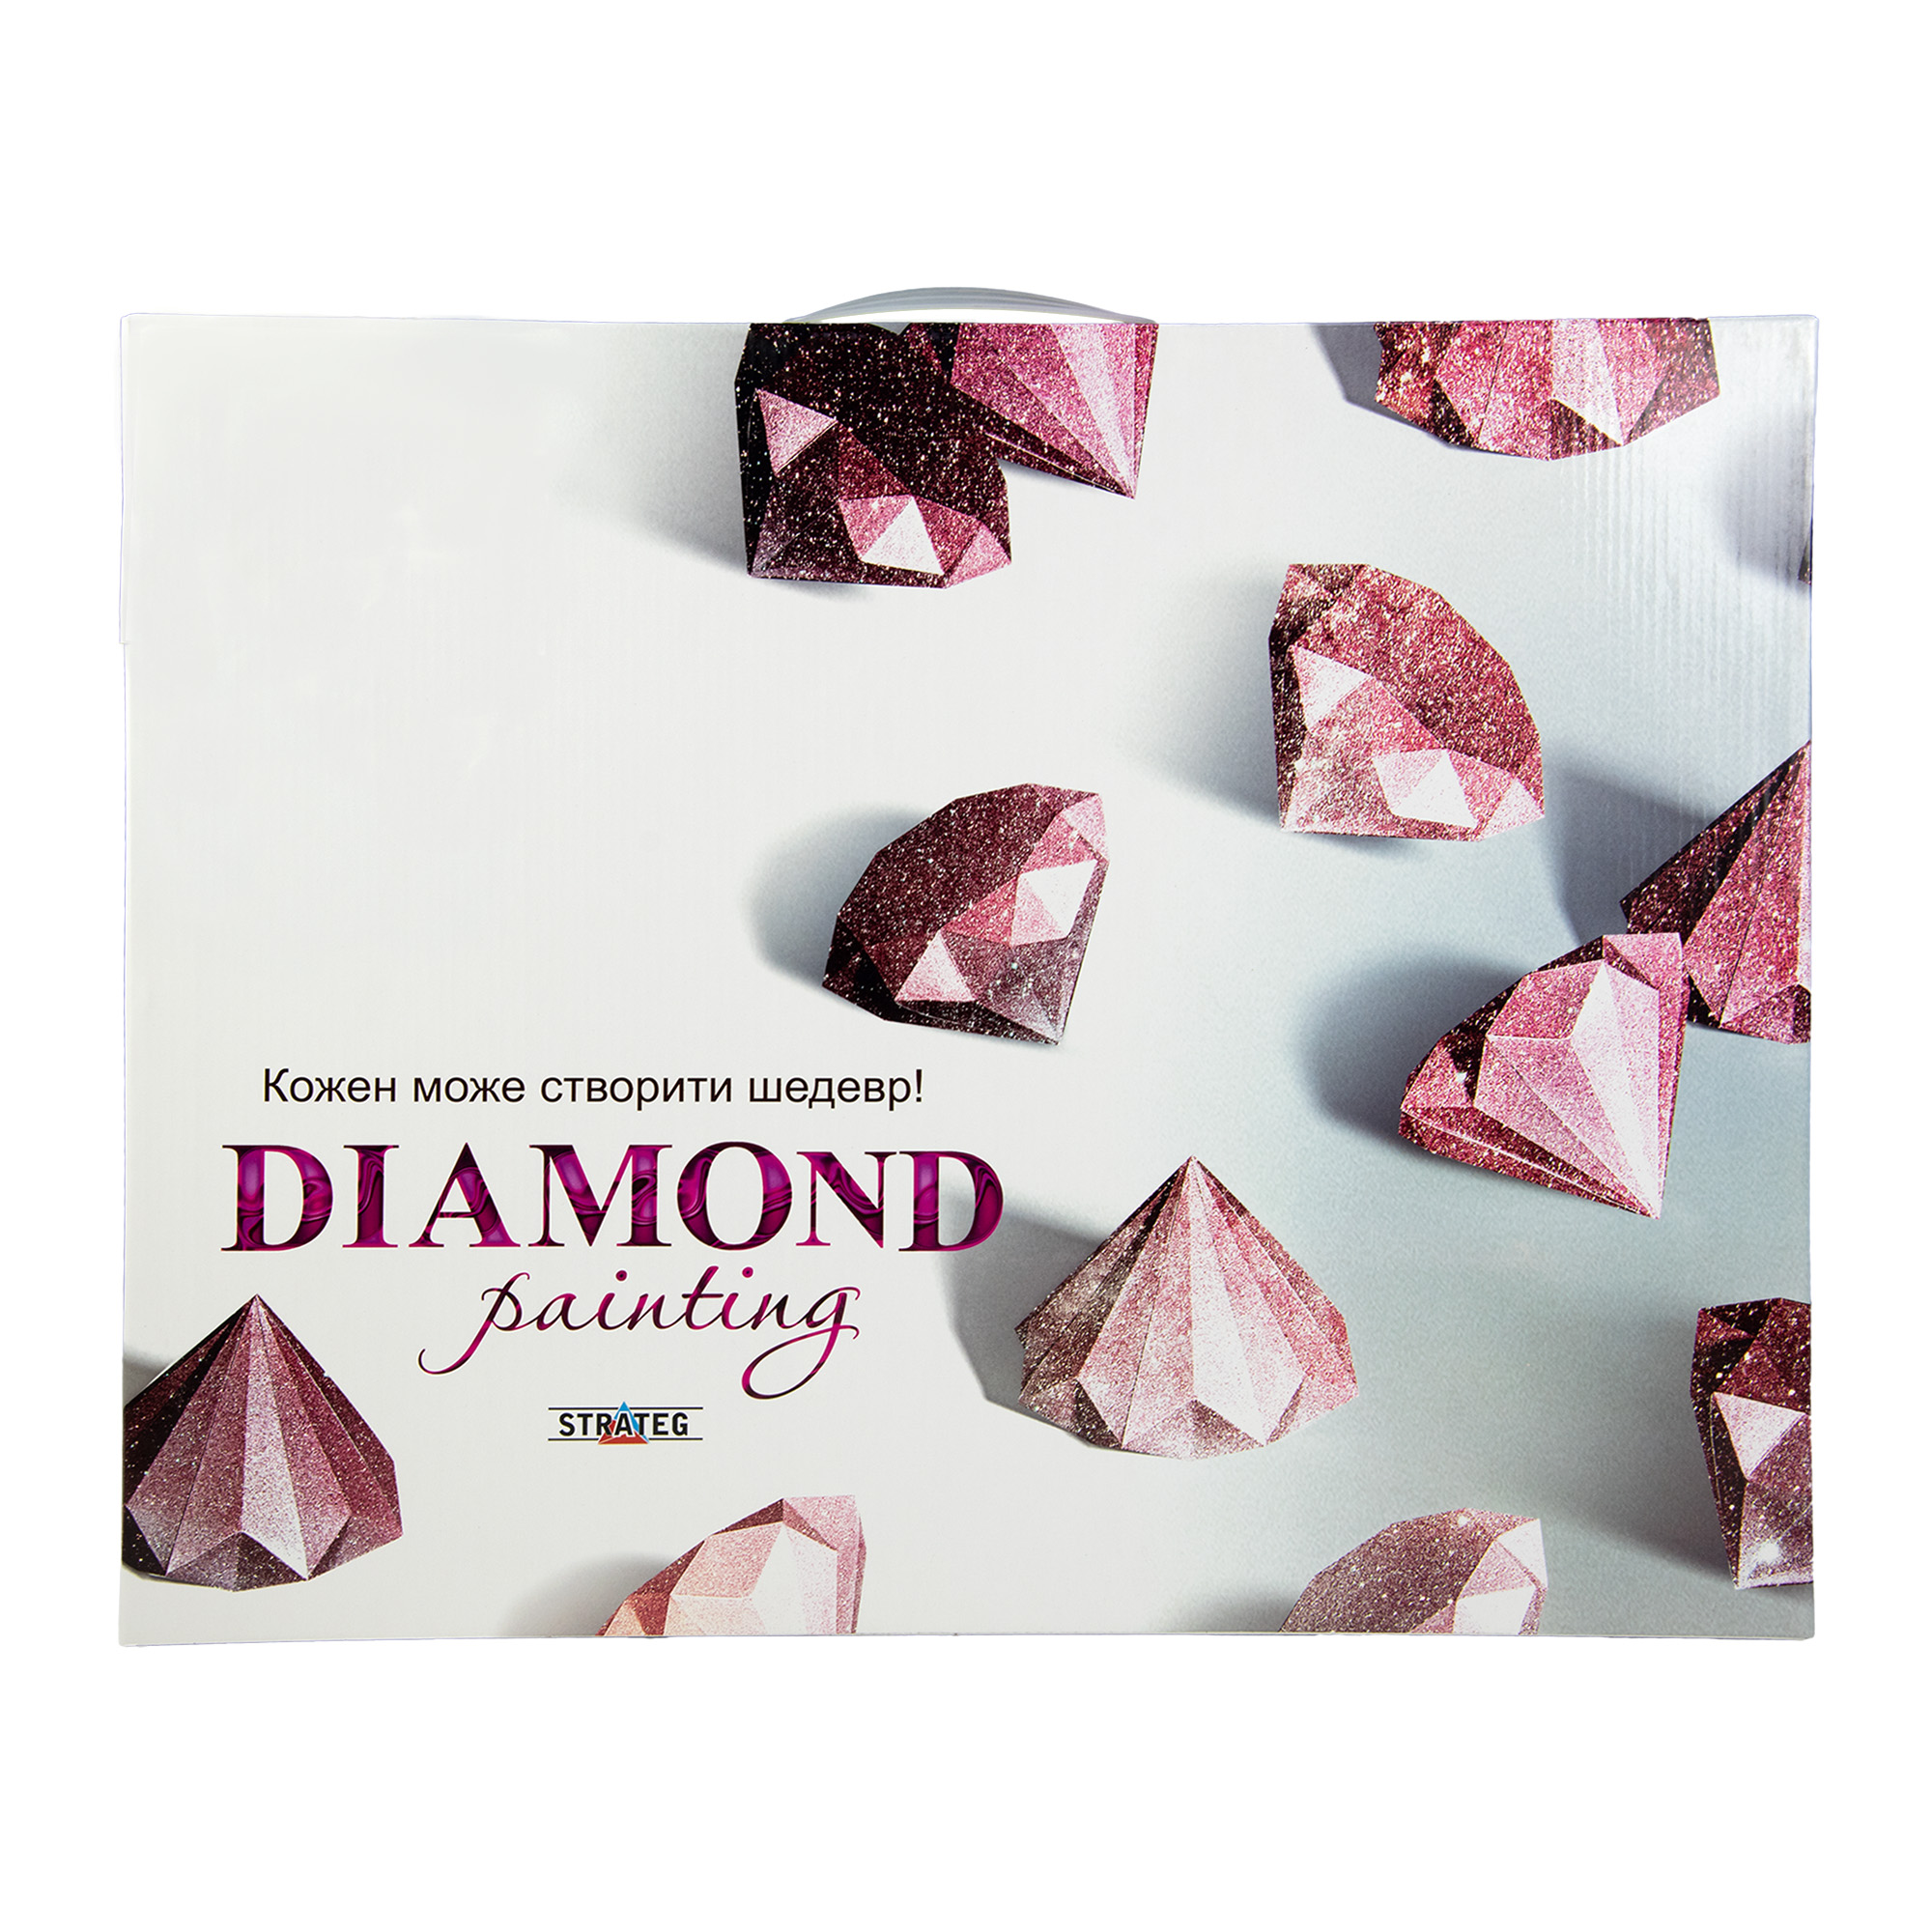 Diamantmosaik Strateg PREMIUM Vierfarbige Eulen Größe 30x30 cm (ME13827)